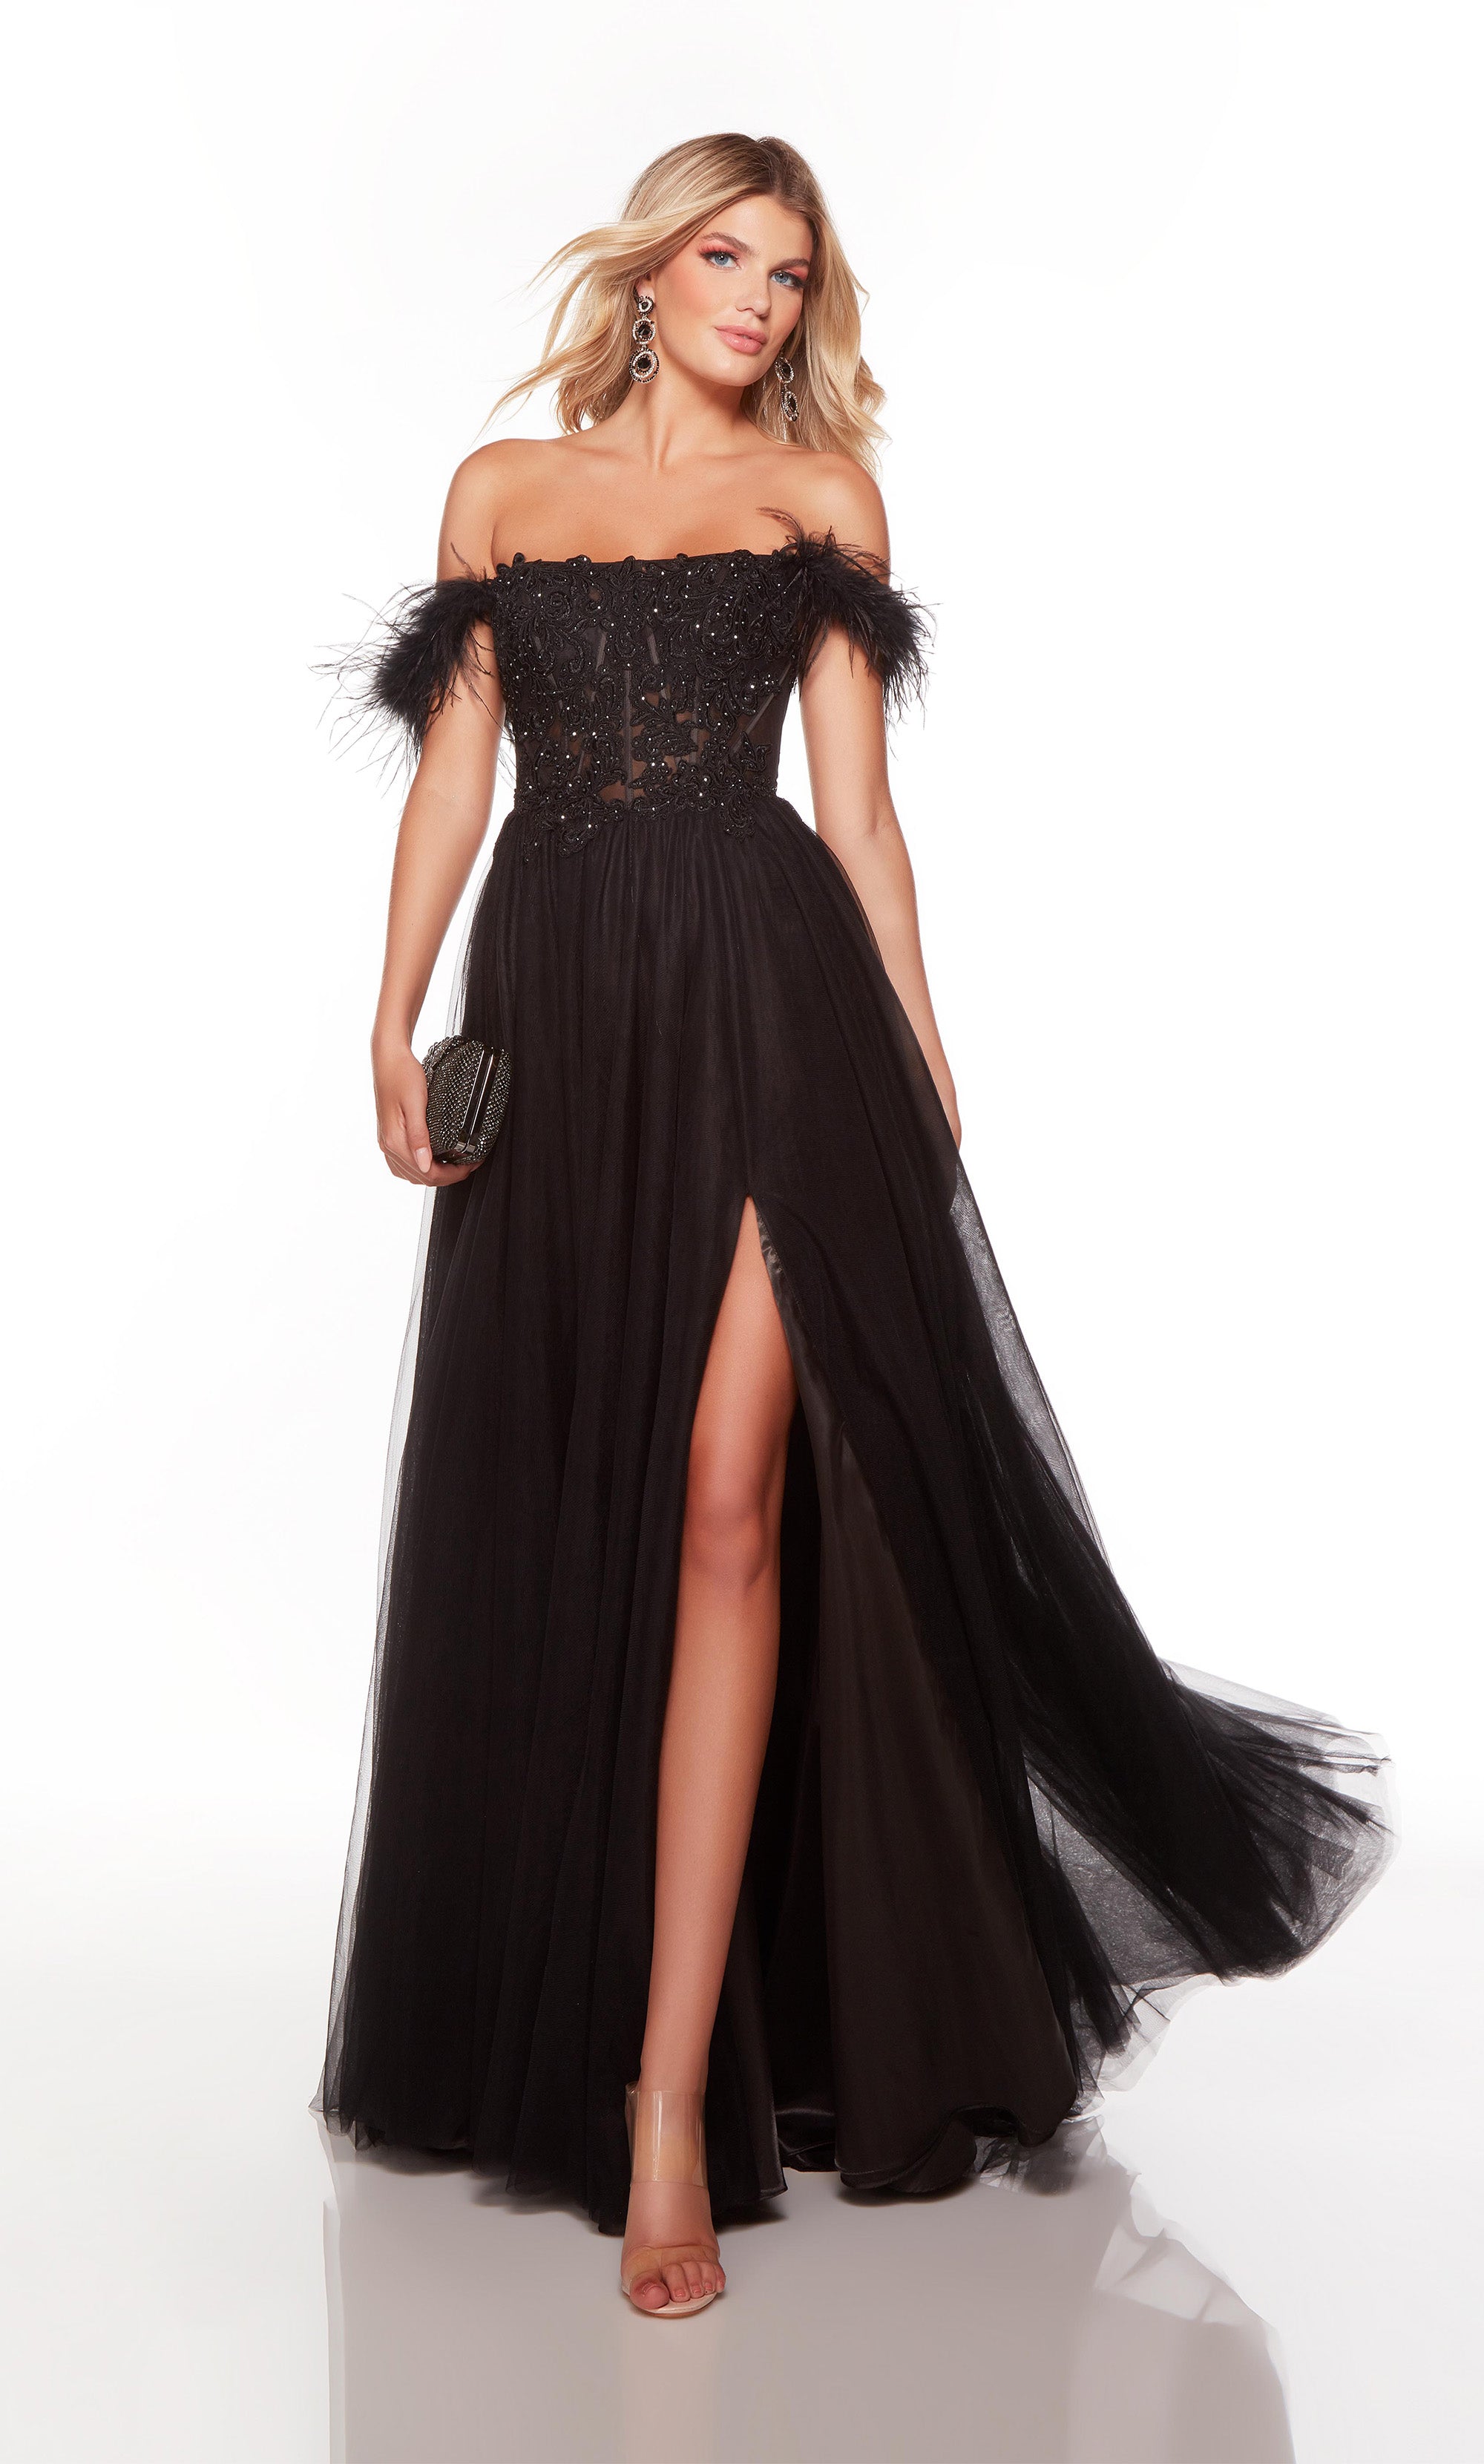 Designer New Black Long Anarkali Dress|Wedding Special Gown Dress